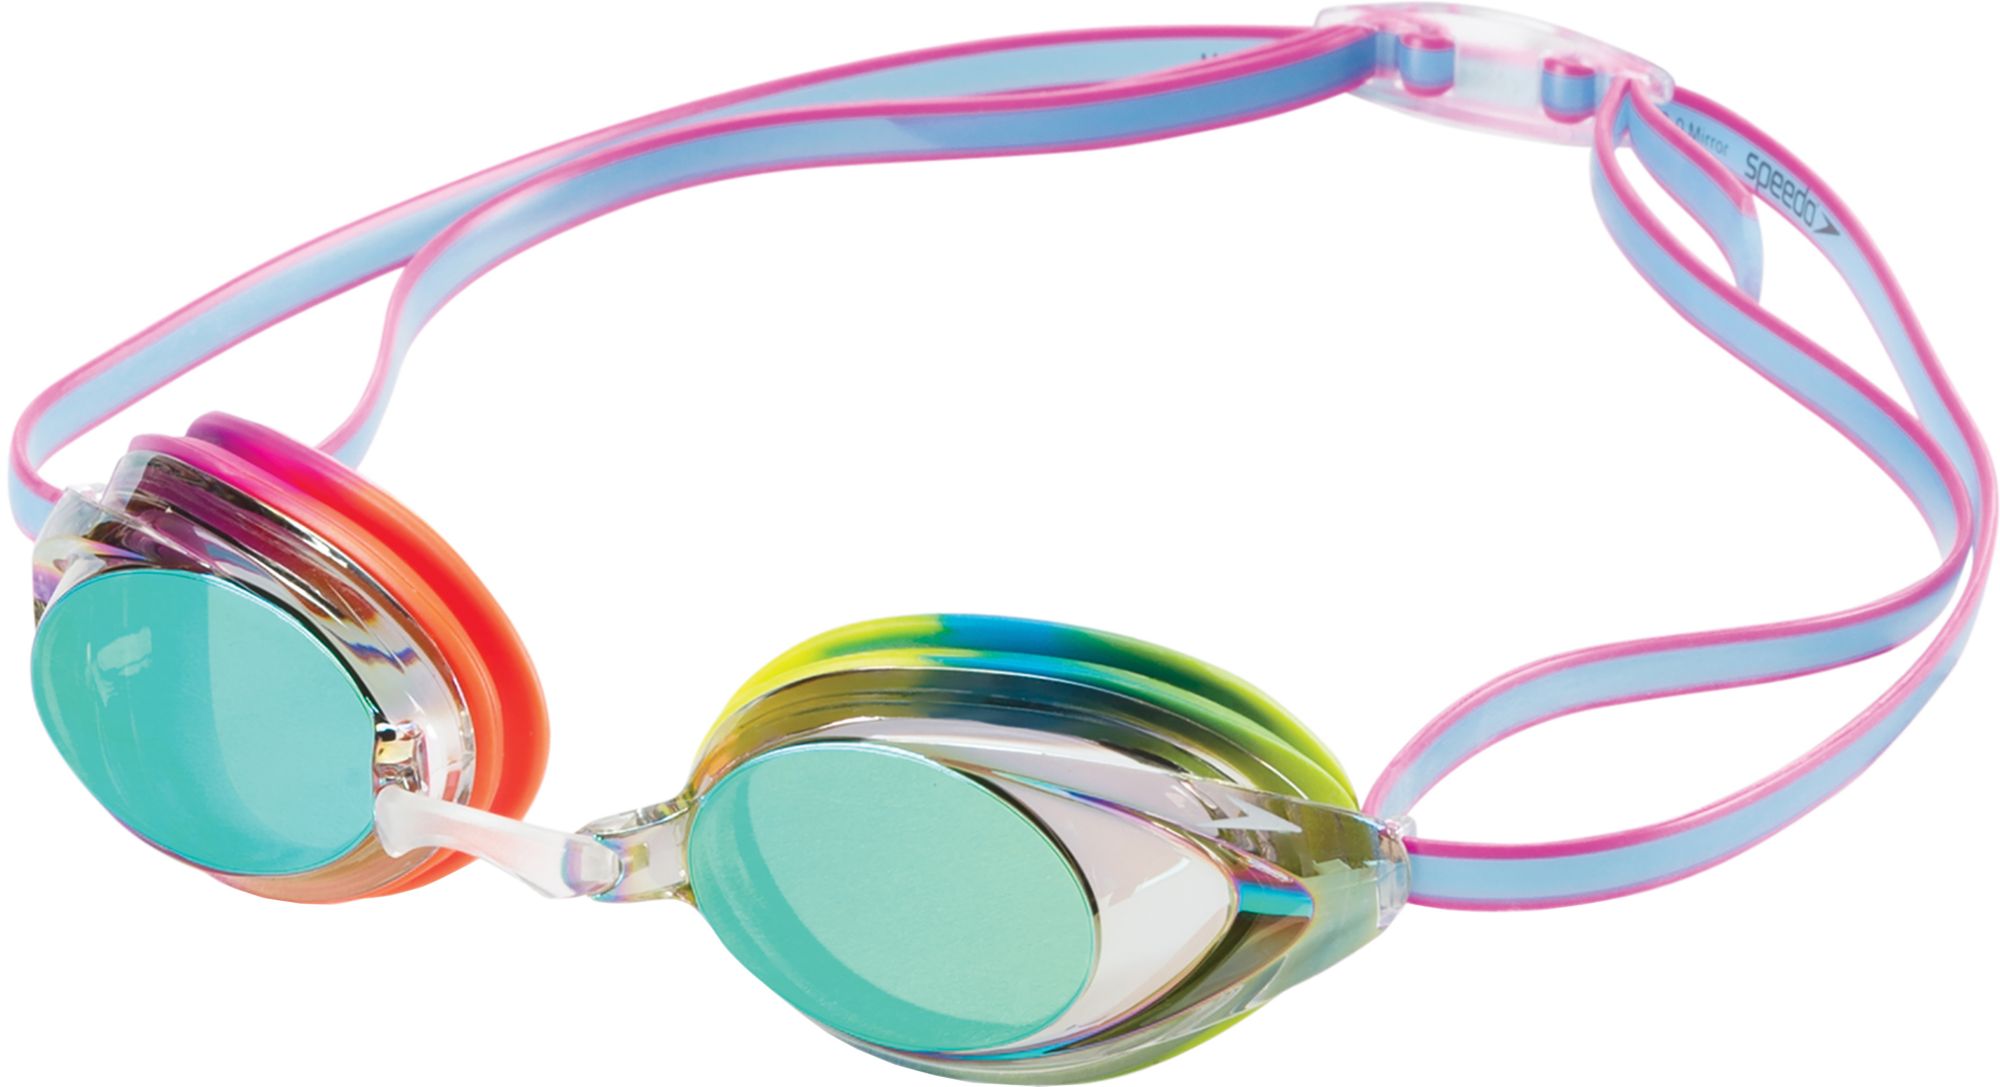 buy speedo goggles online